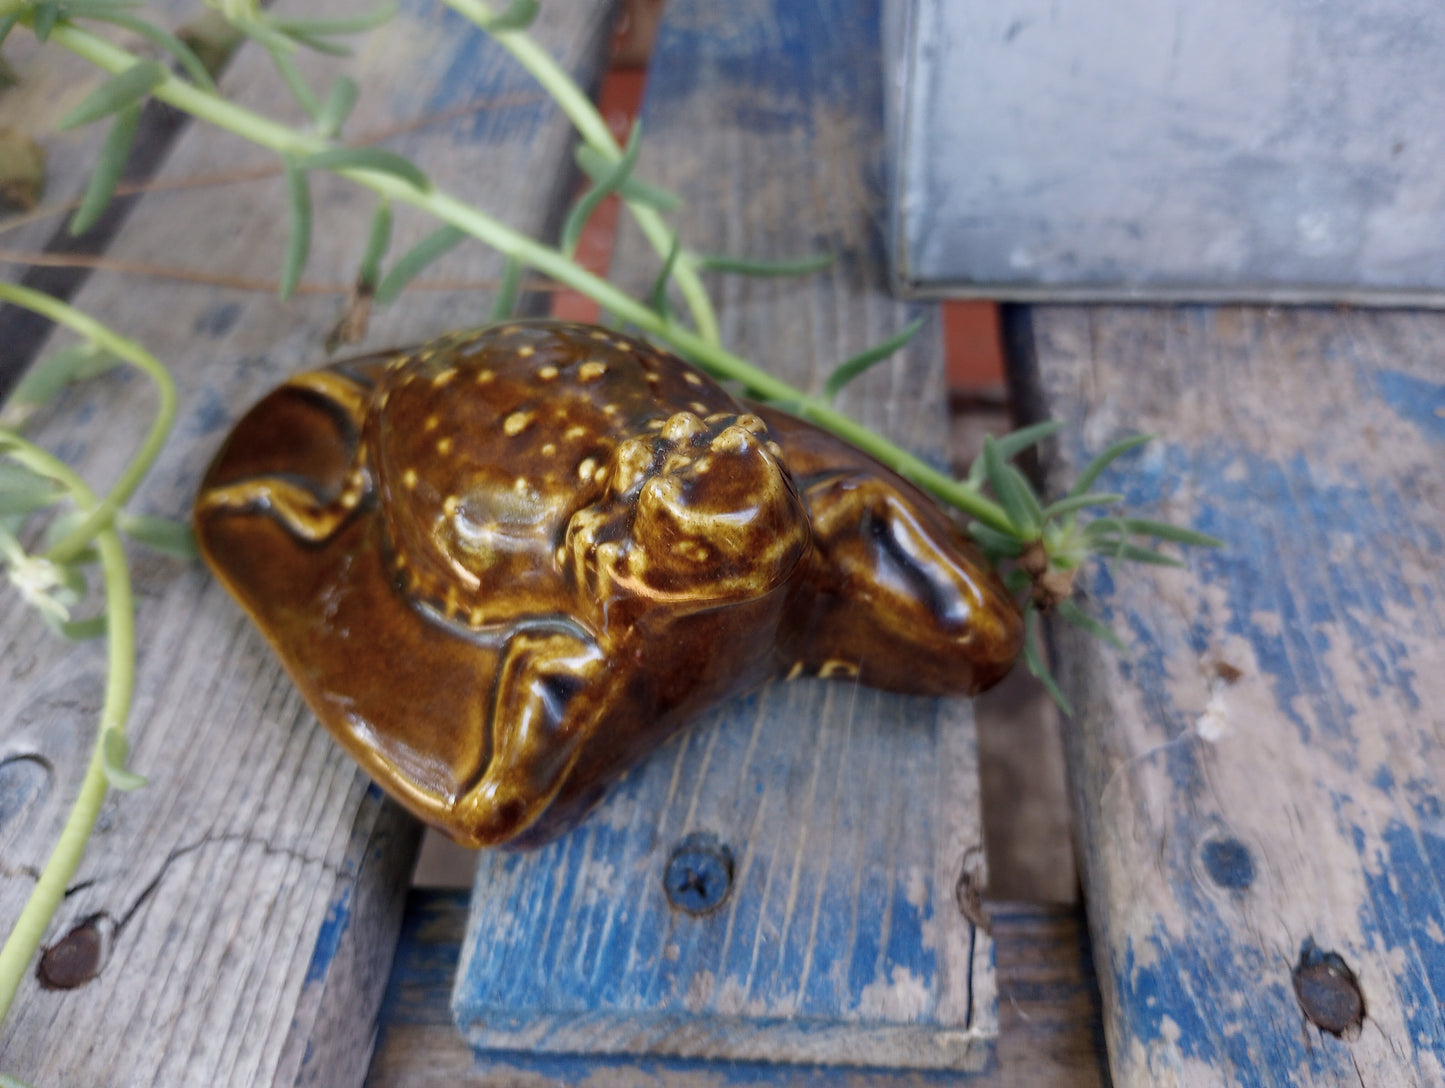 Cool vintage ceramic Horney Toad